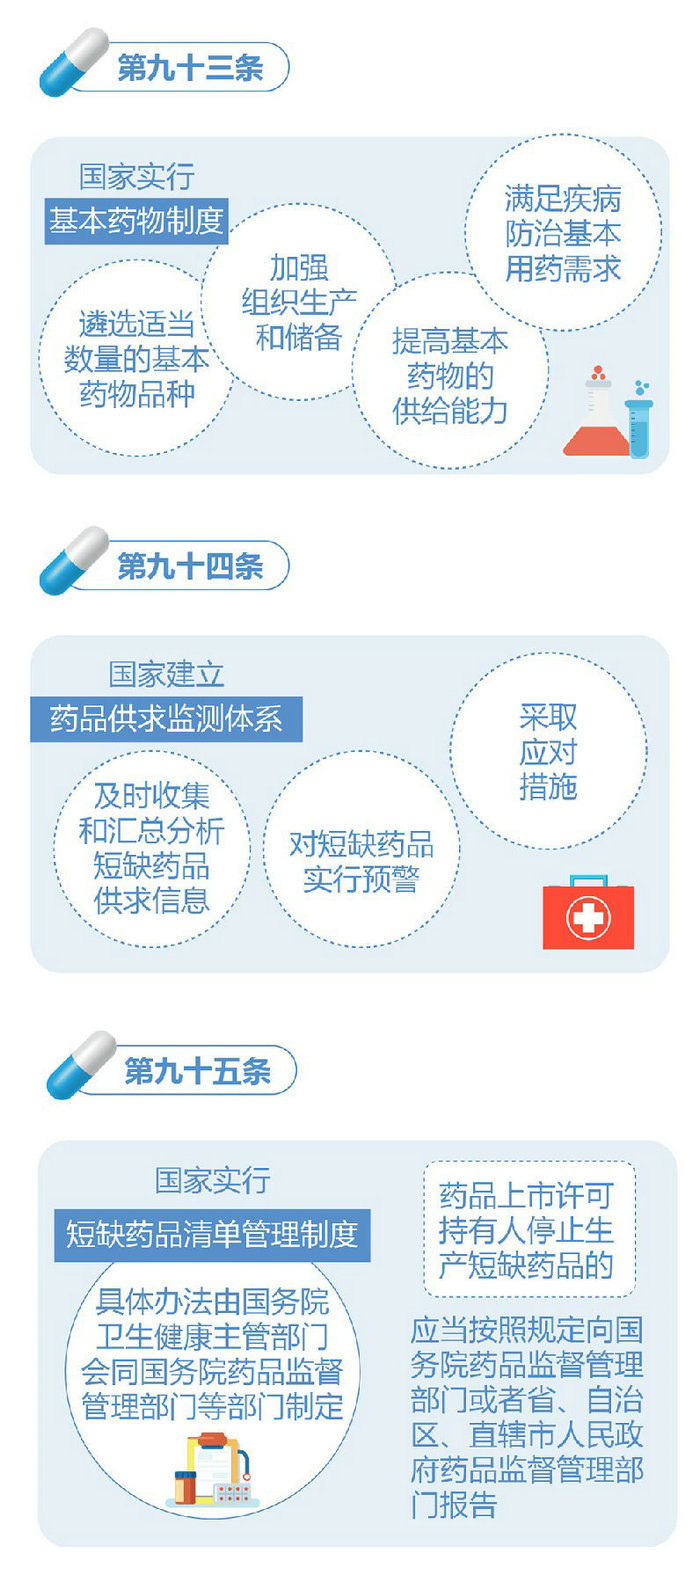 新修订的《中华人民共和国药品管理法》图解政策（五）